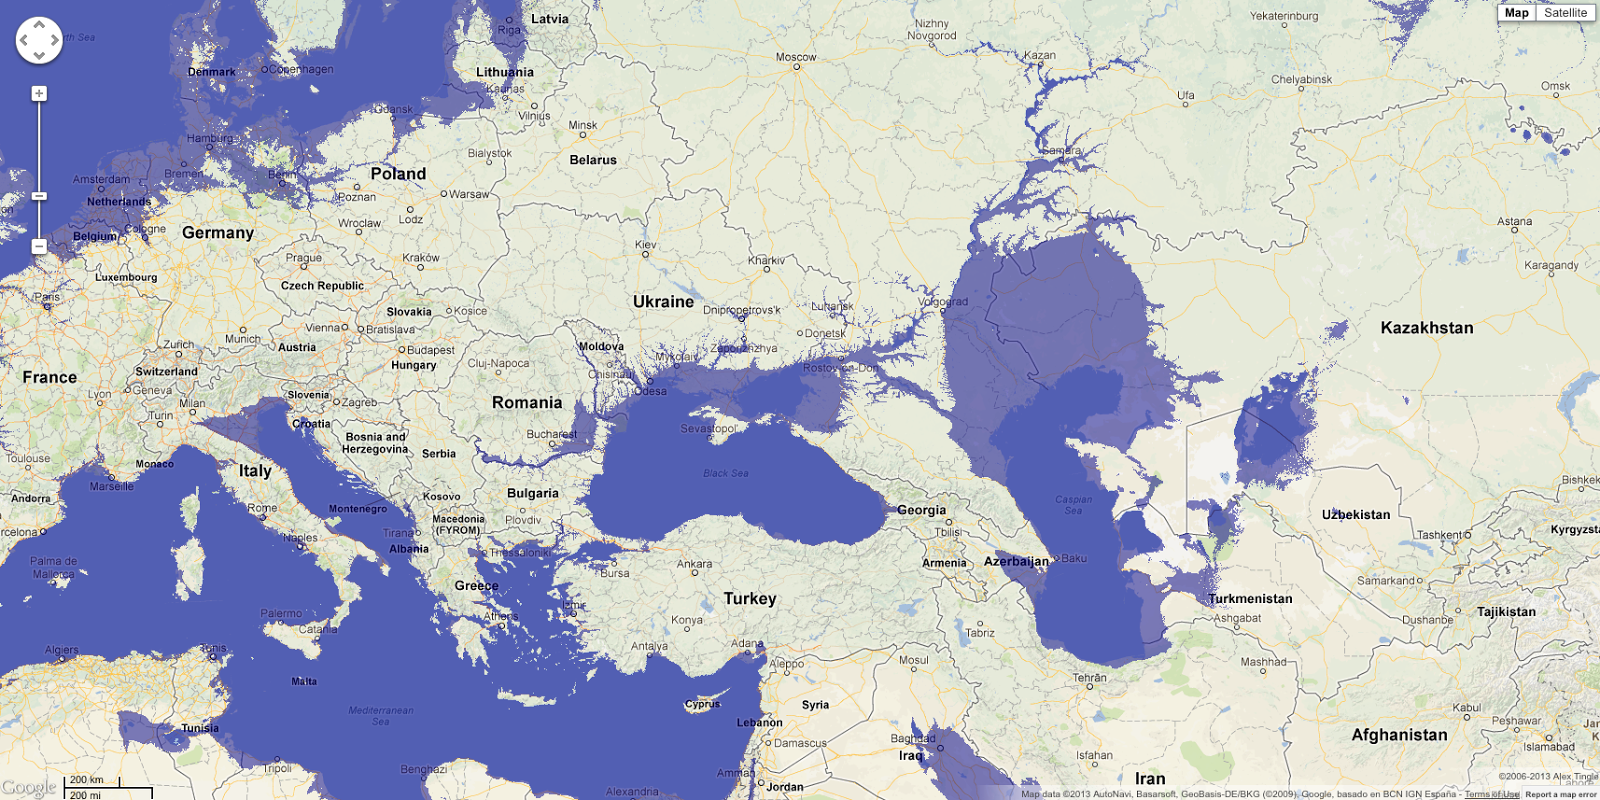 Карта высот санкт петербурга над уровнем. Карта затопления при подъеме уровня мирового океана. Карта России после потопа. Карта глобального затопления России.